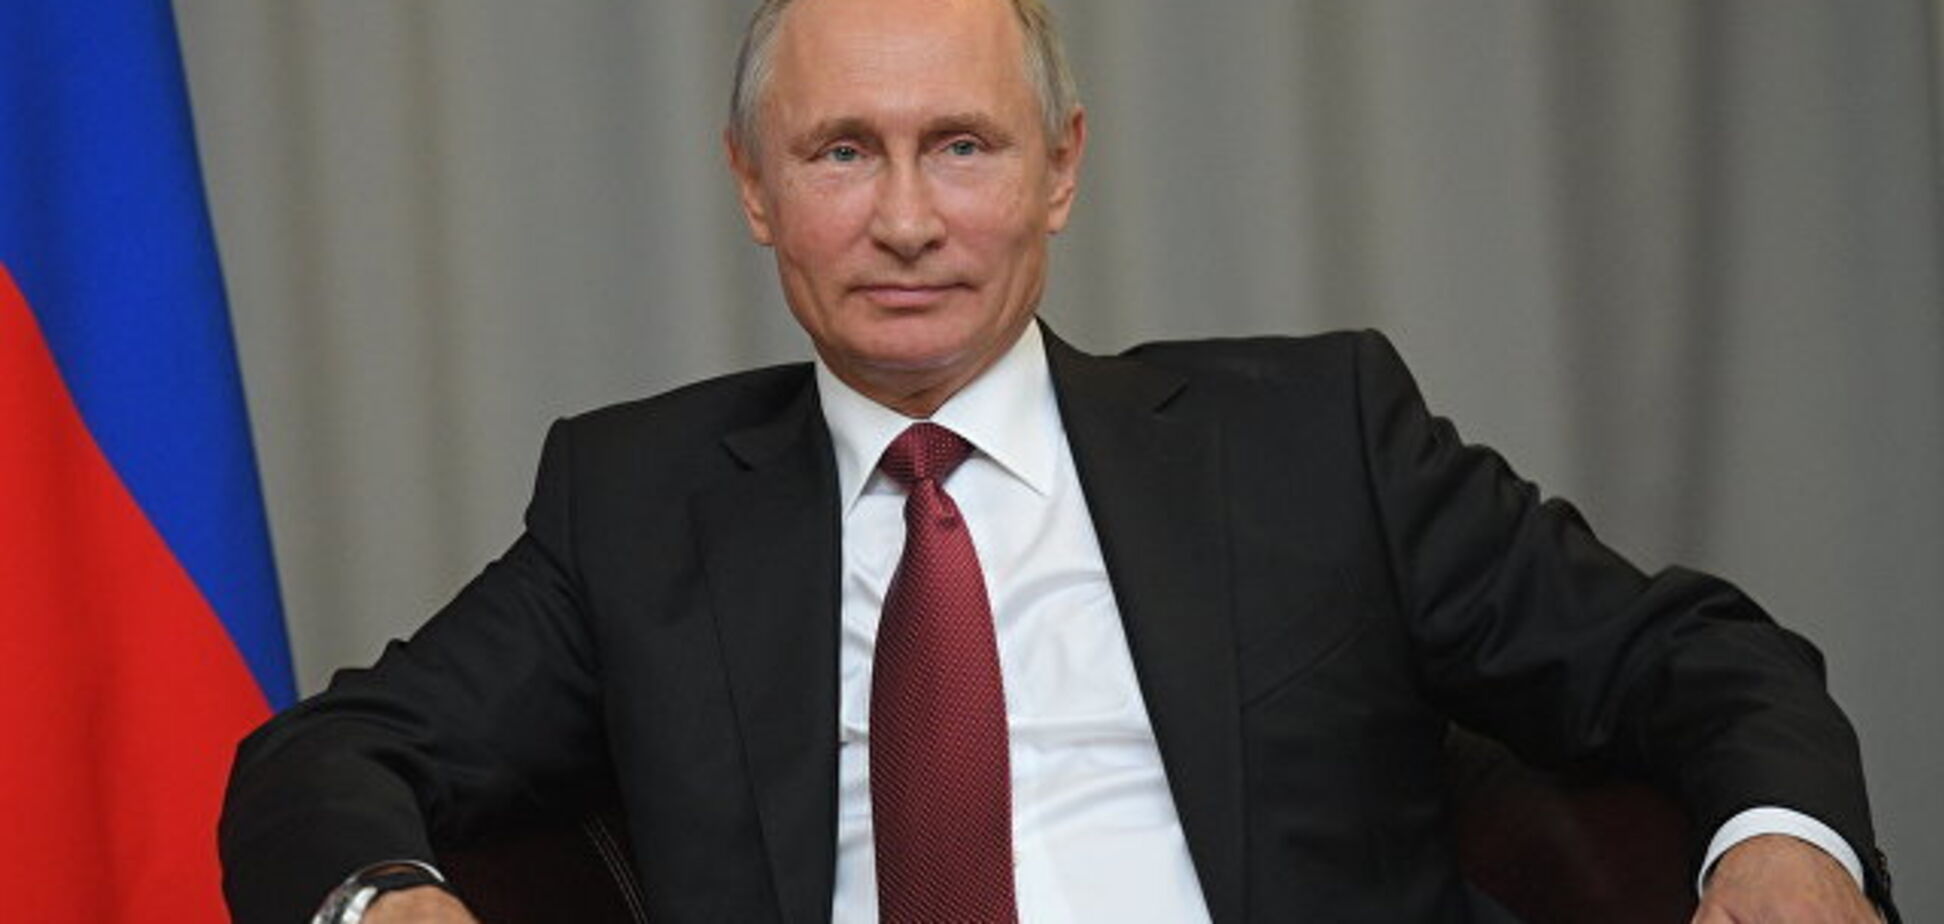 Неудачная шутка: в США чиновники оконфузились с портретом Путина